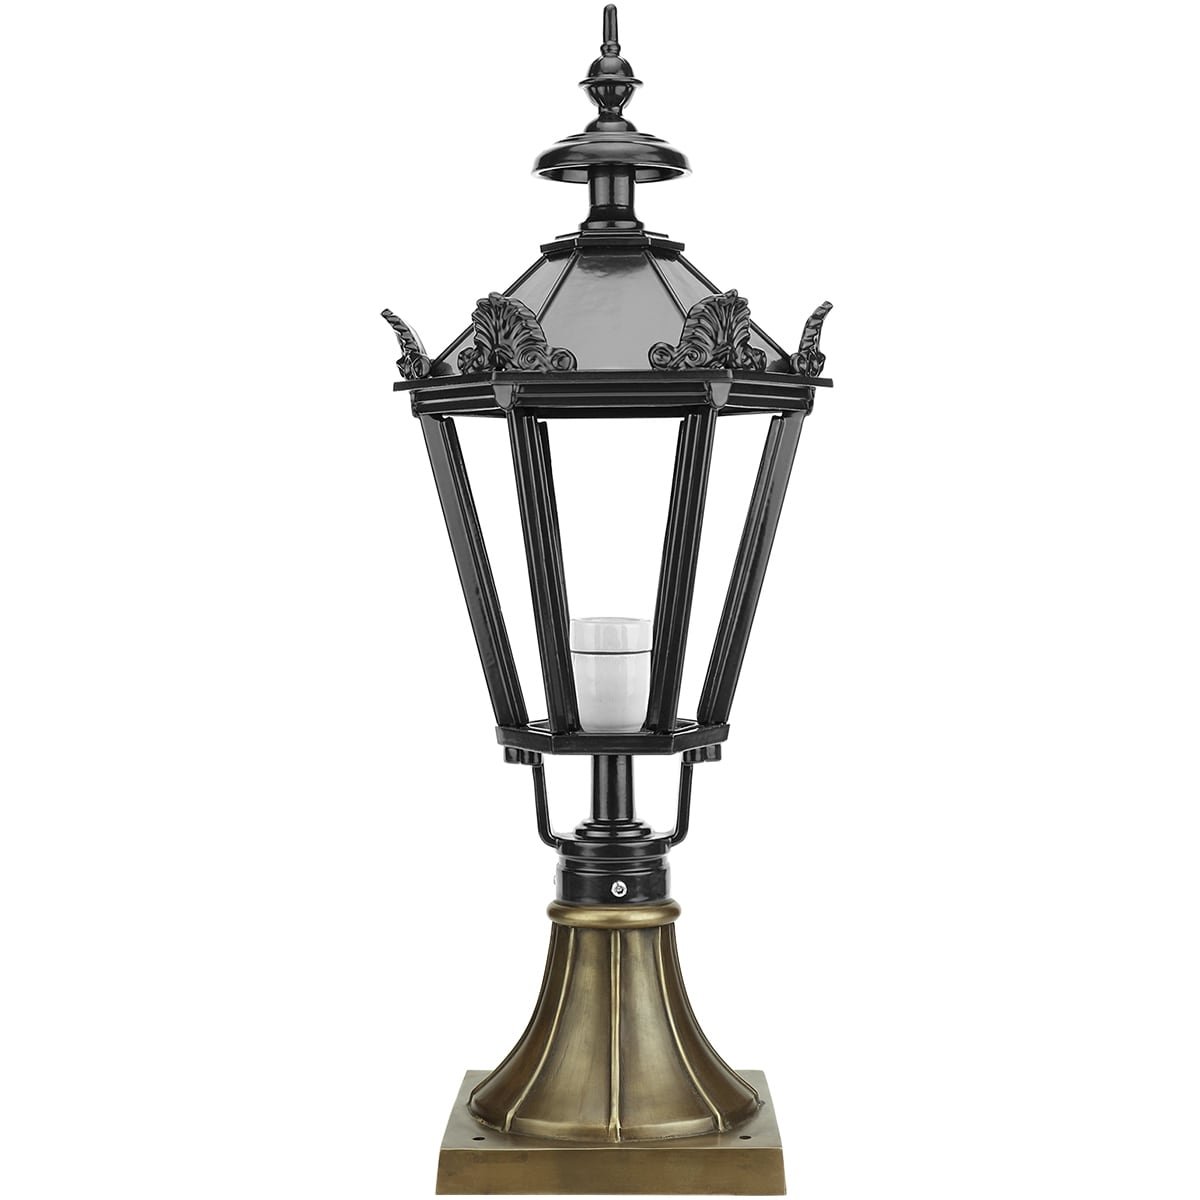 Lantern lamp Beuningen bronze - 79 cm